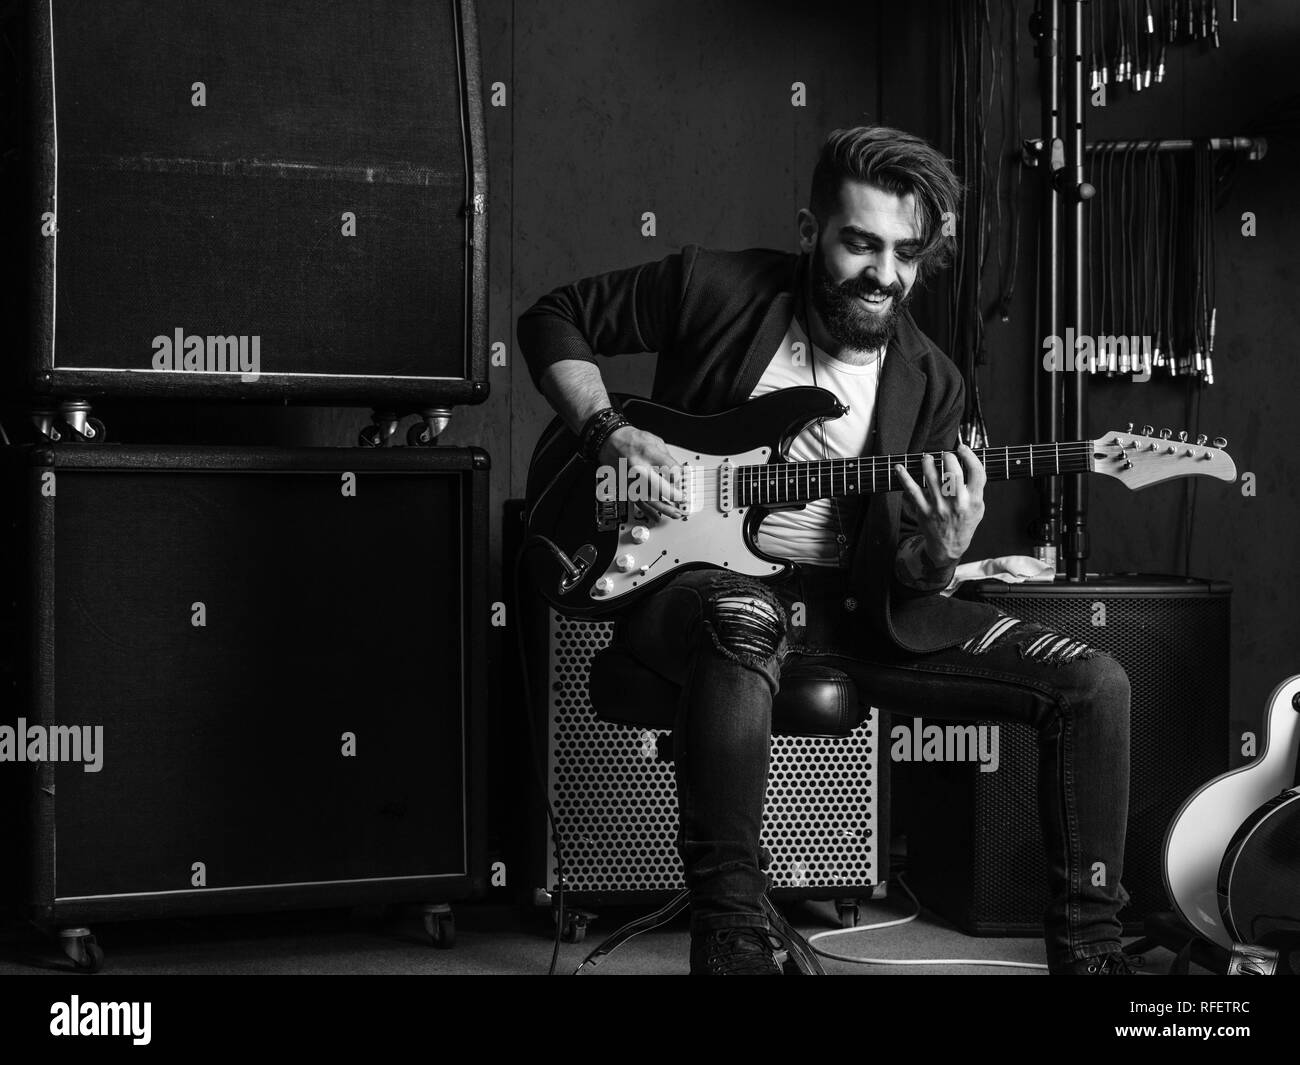 Foto in bianco e nero di un uomo con la barba seduto e a suonare la chitarra elettrica in uno studio di registrazione. Foto Stock